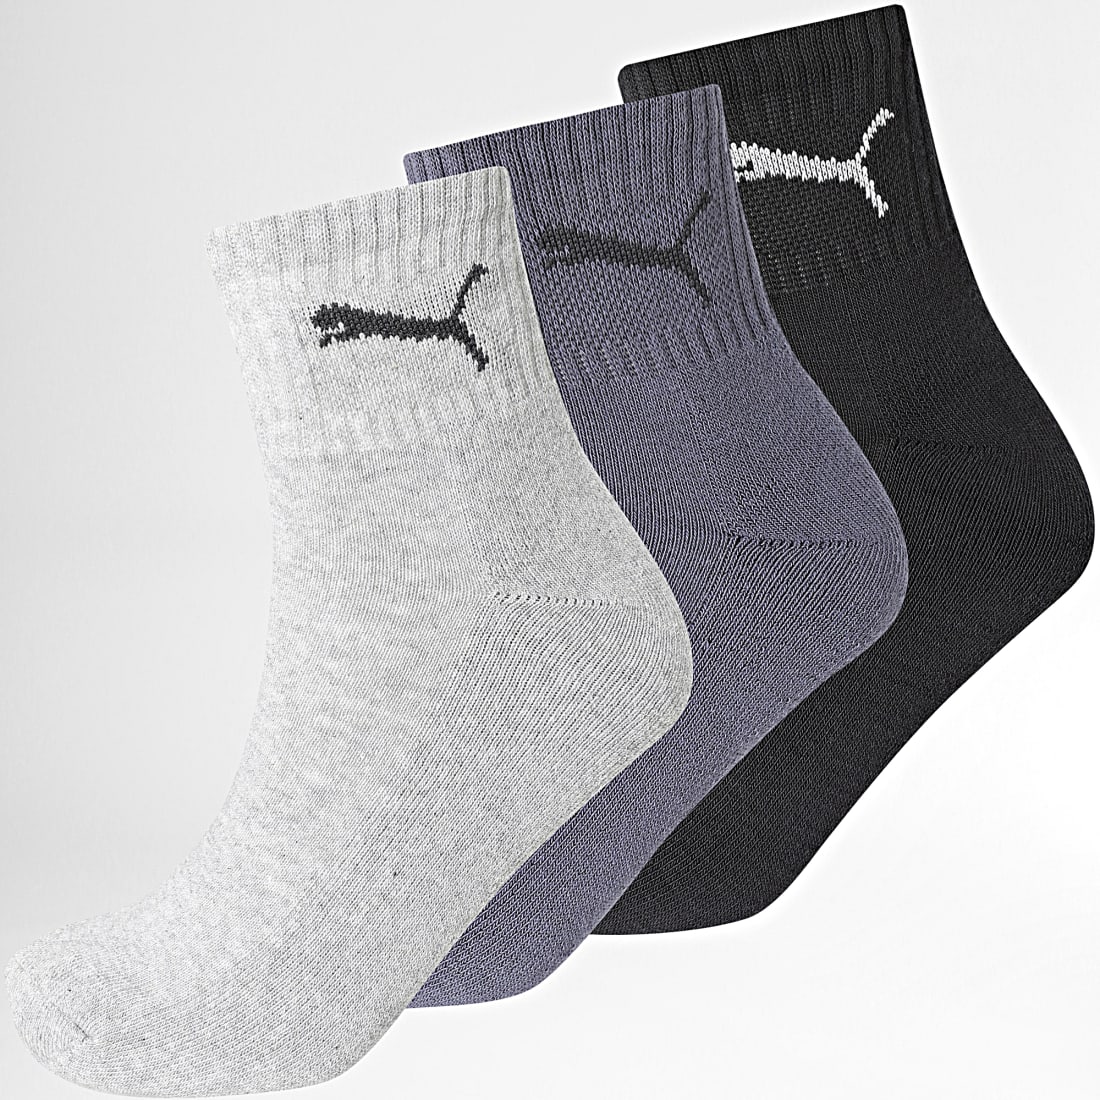 Lot de 3 paires de chaussettes 'Puma' - gris/bleu - Kiabi - 8.00€